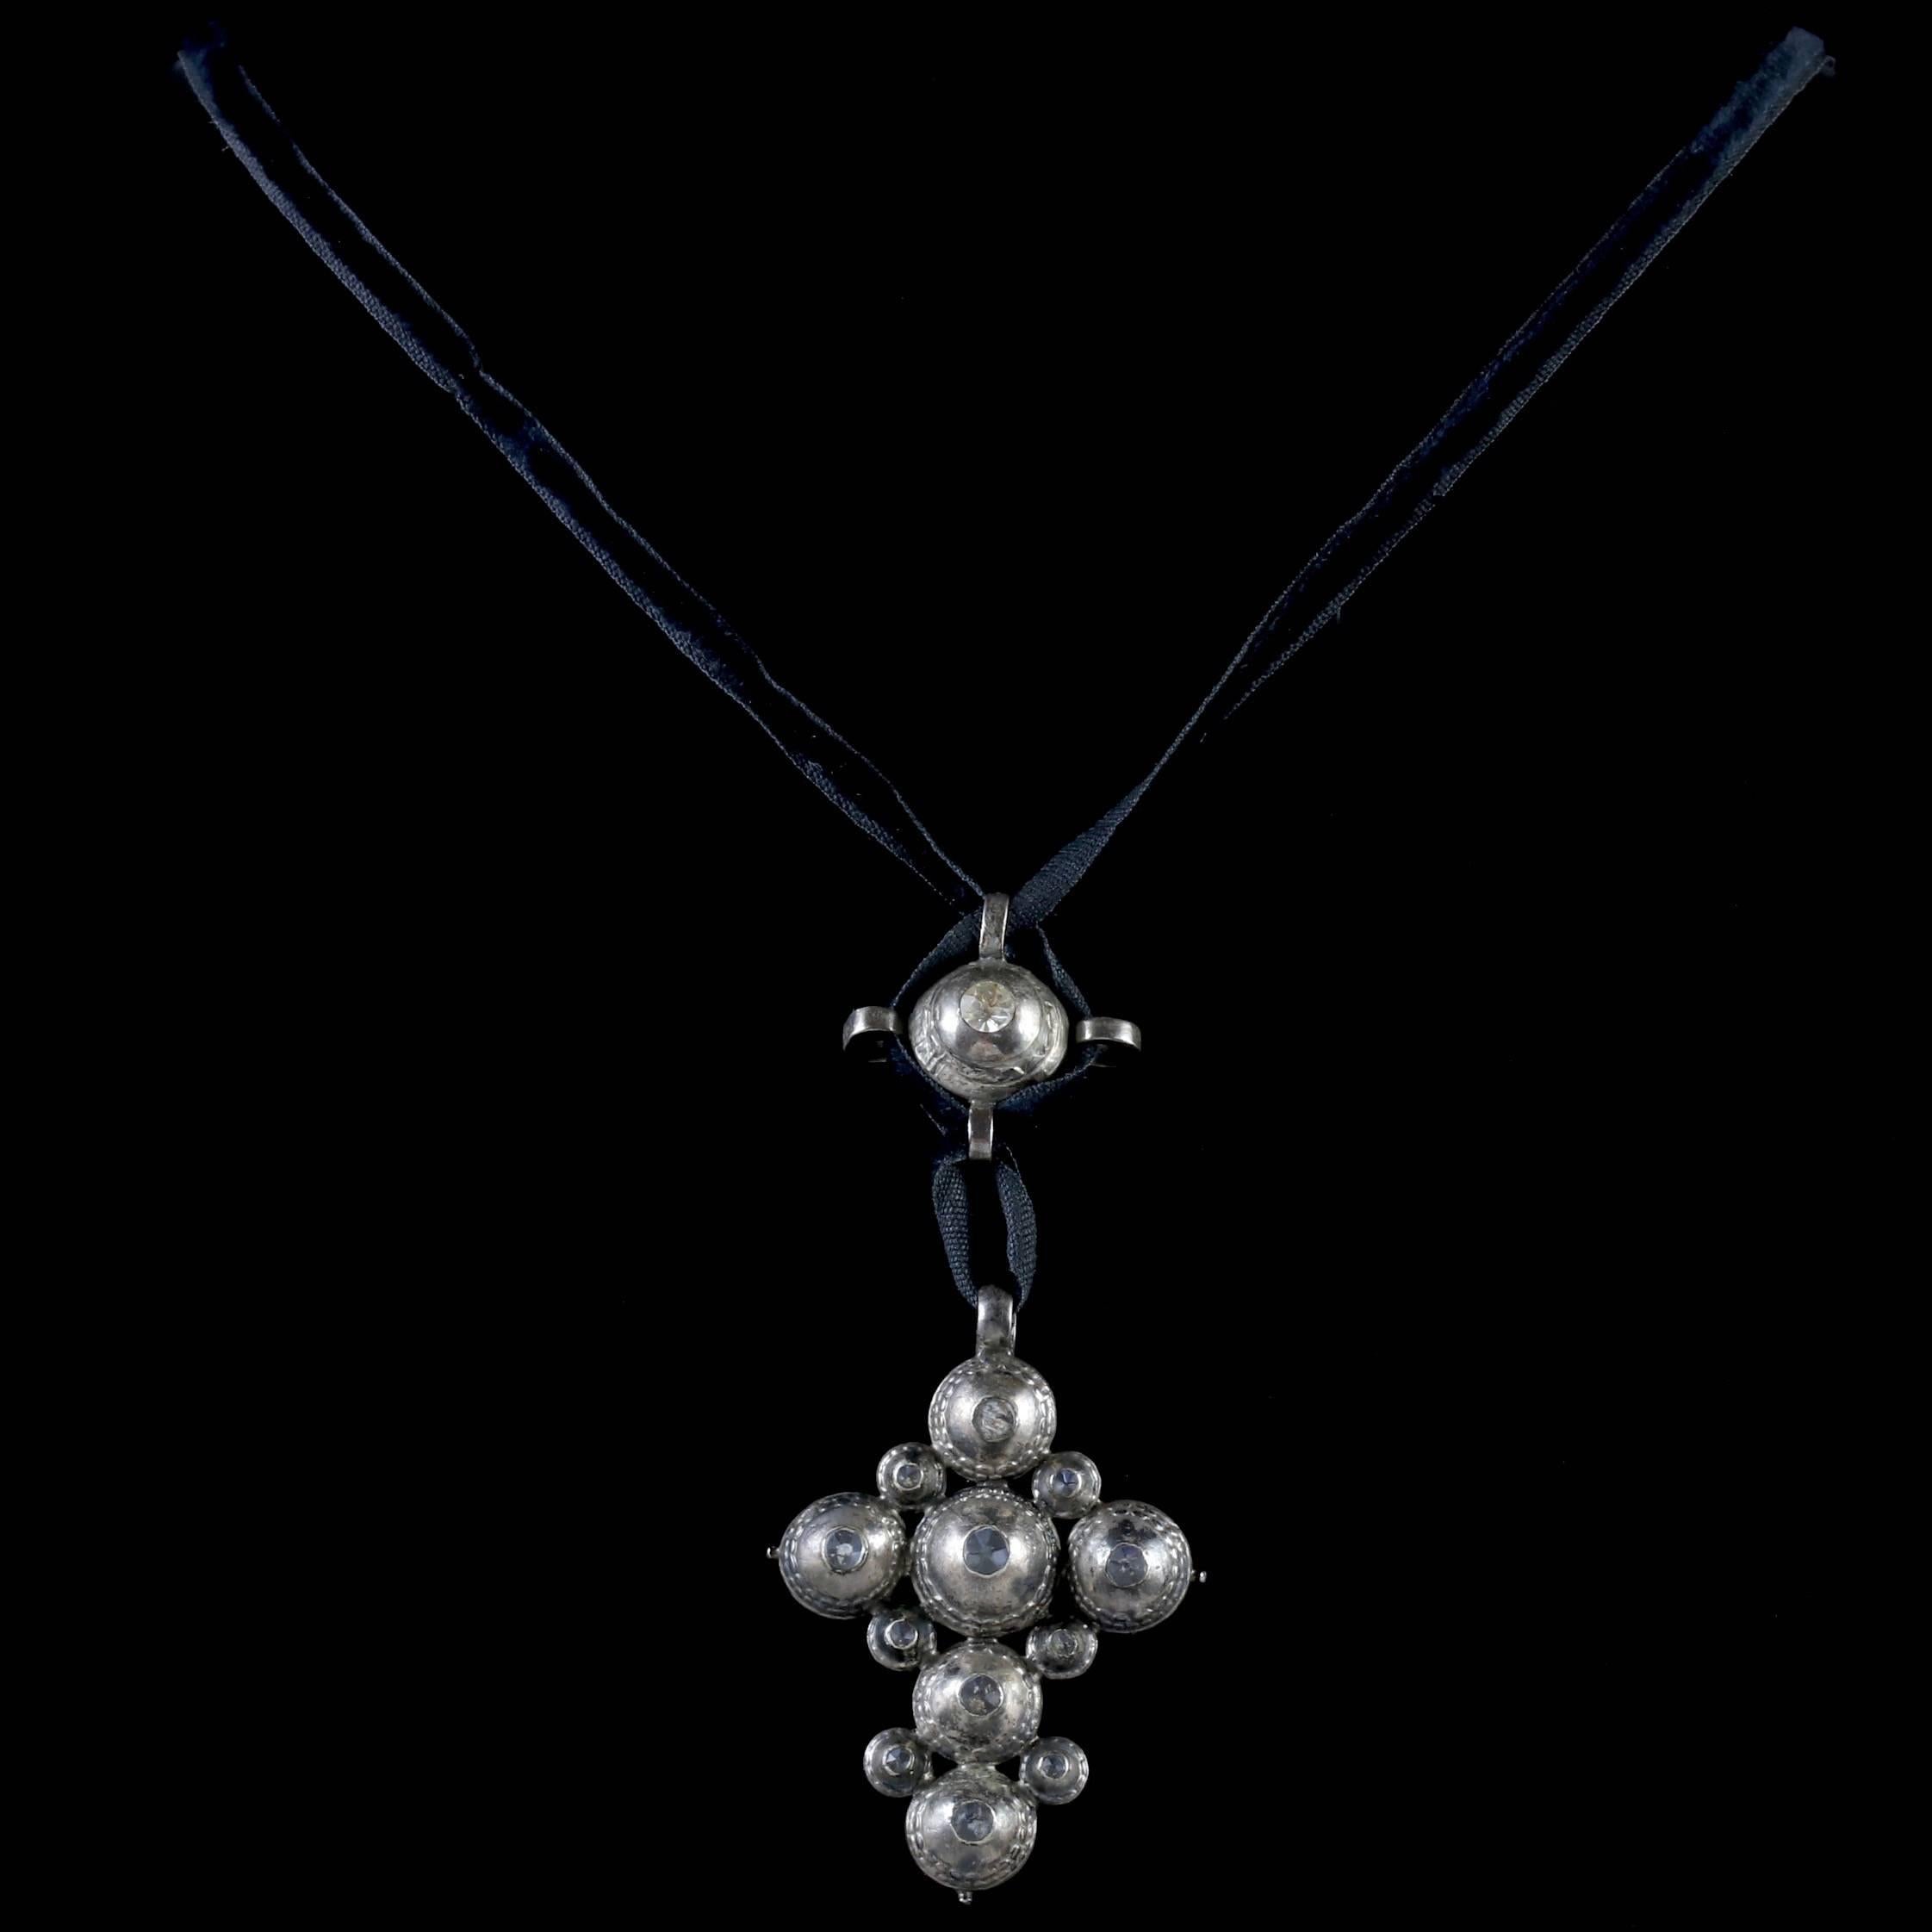 georgian cross pendant